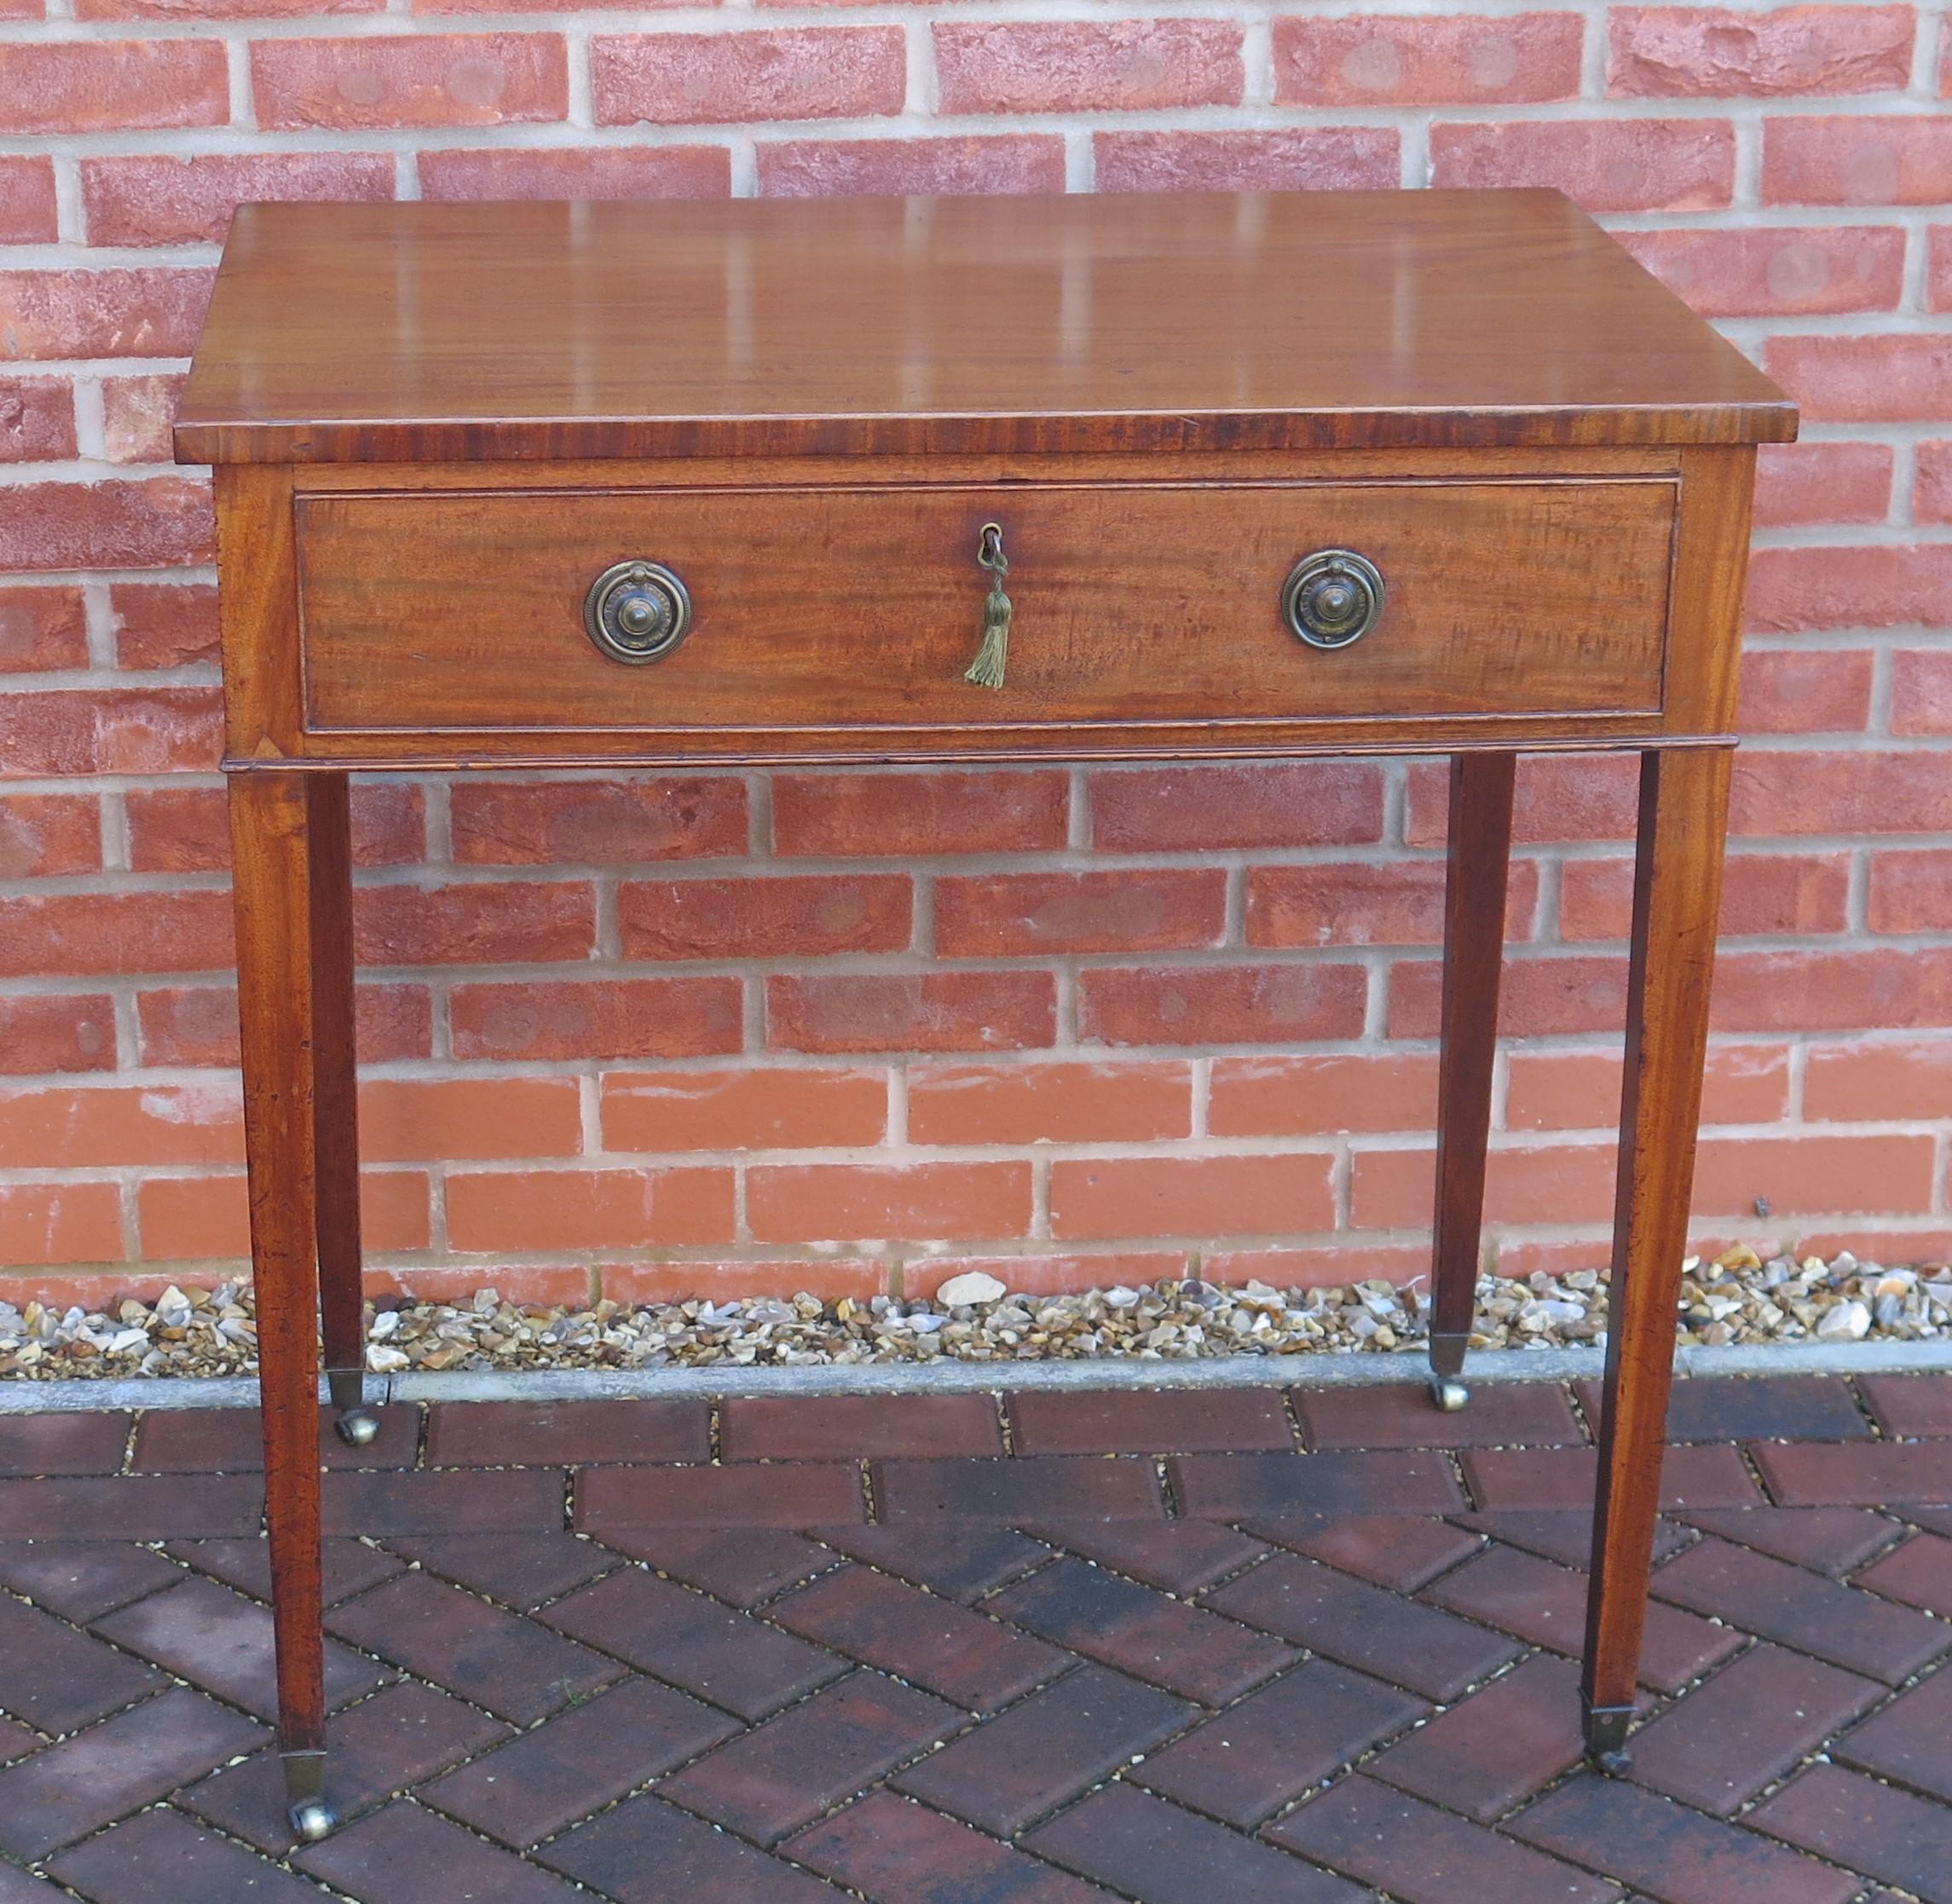 Il s'agit d'une table à écrire ou d'une coiffeuse de très bonne facture, datant de la période anglaise George III de la fin du XVIIIe siècle, vers 1790.

Il s'agit d'un beau meuble anglais aux proportions classiques, conformes au mobilier géorgien